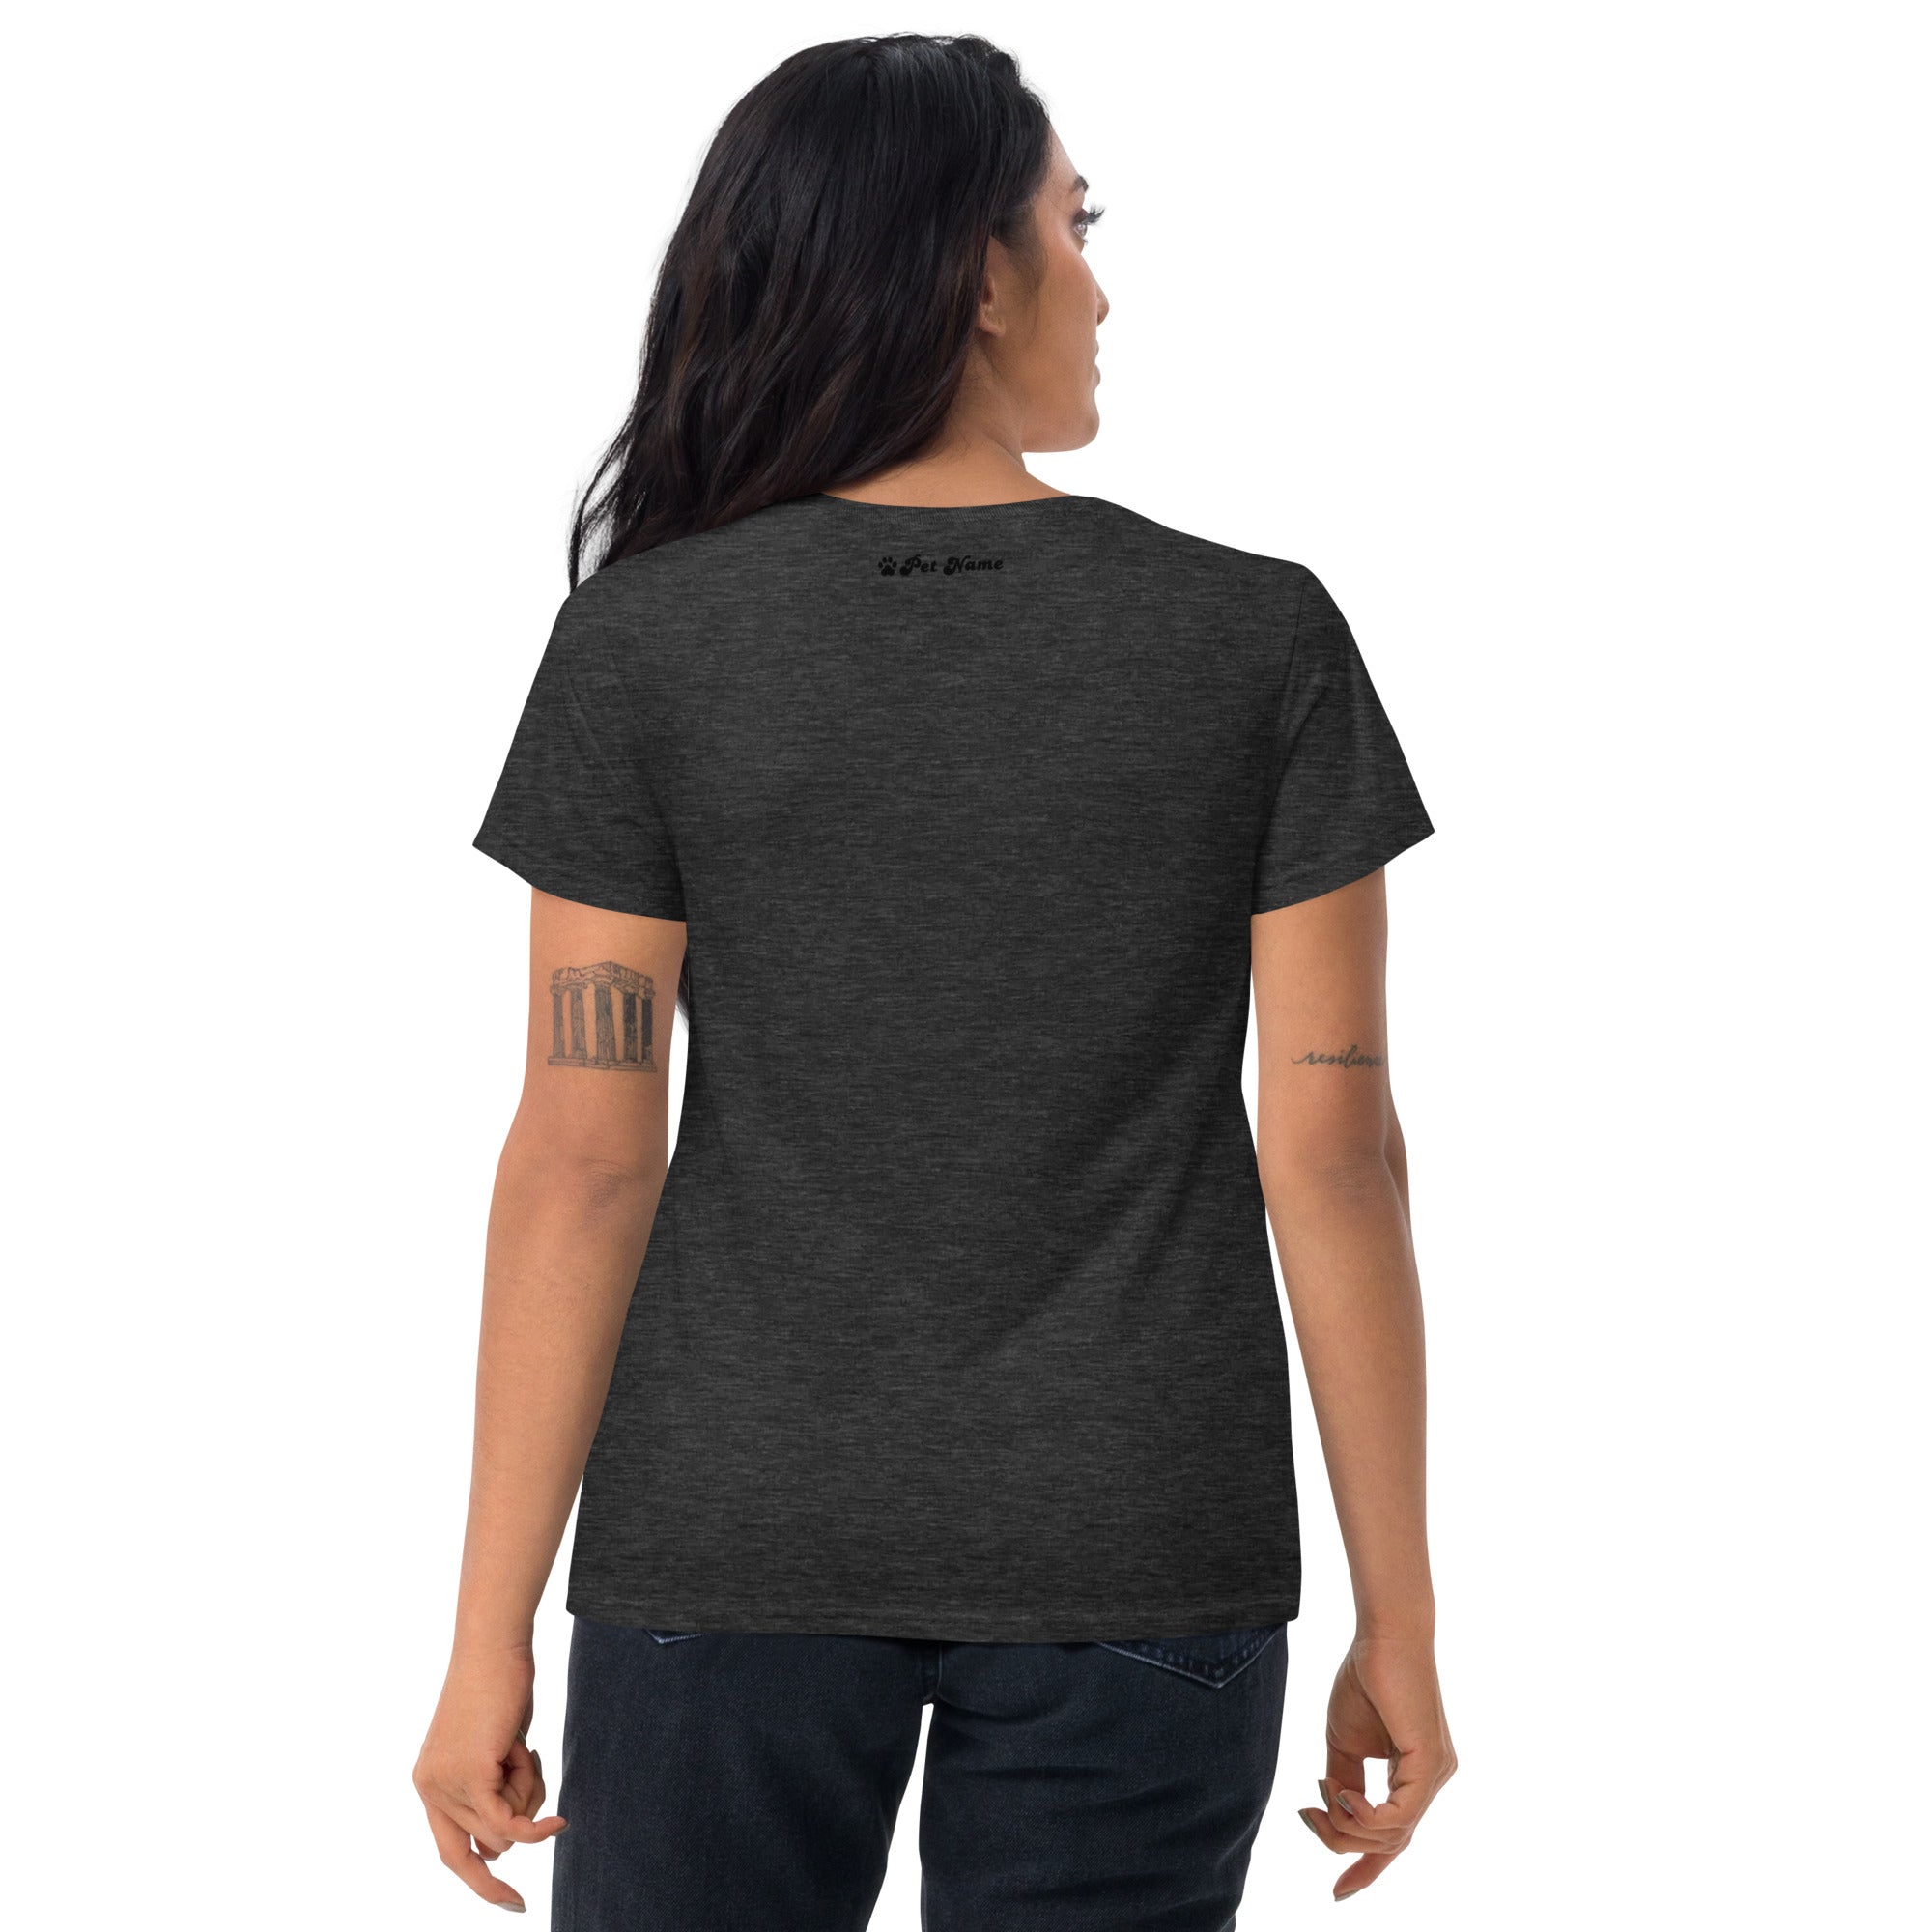 Doberman Pinscher Women's short sleeve t-shirt